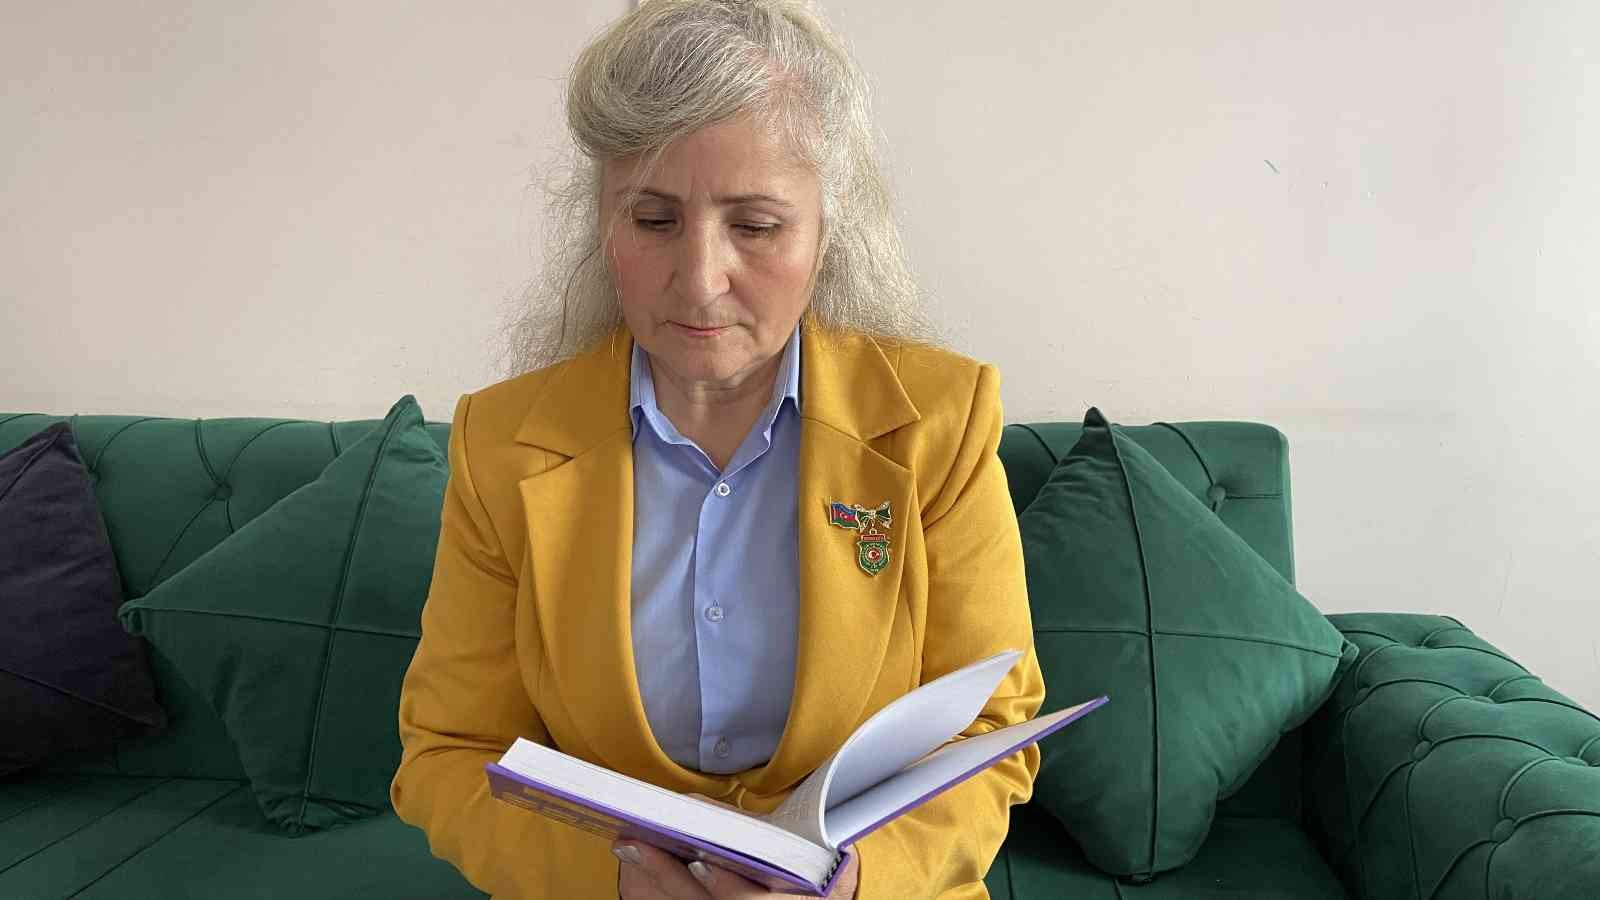 Azeri yazar, şehitler için yazdığı 28 kitabı il il gezerek kütüphanelere bırakıyor